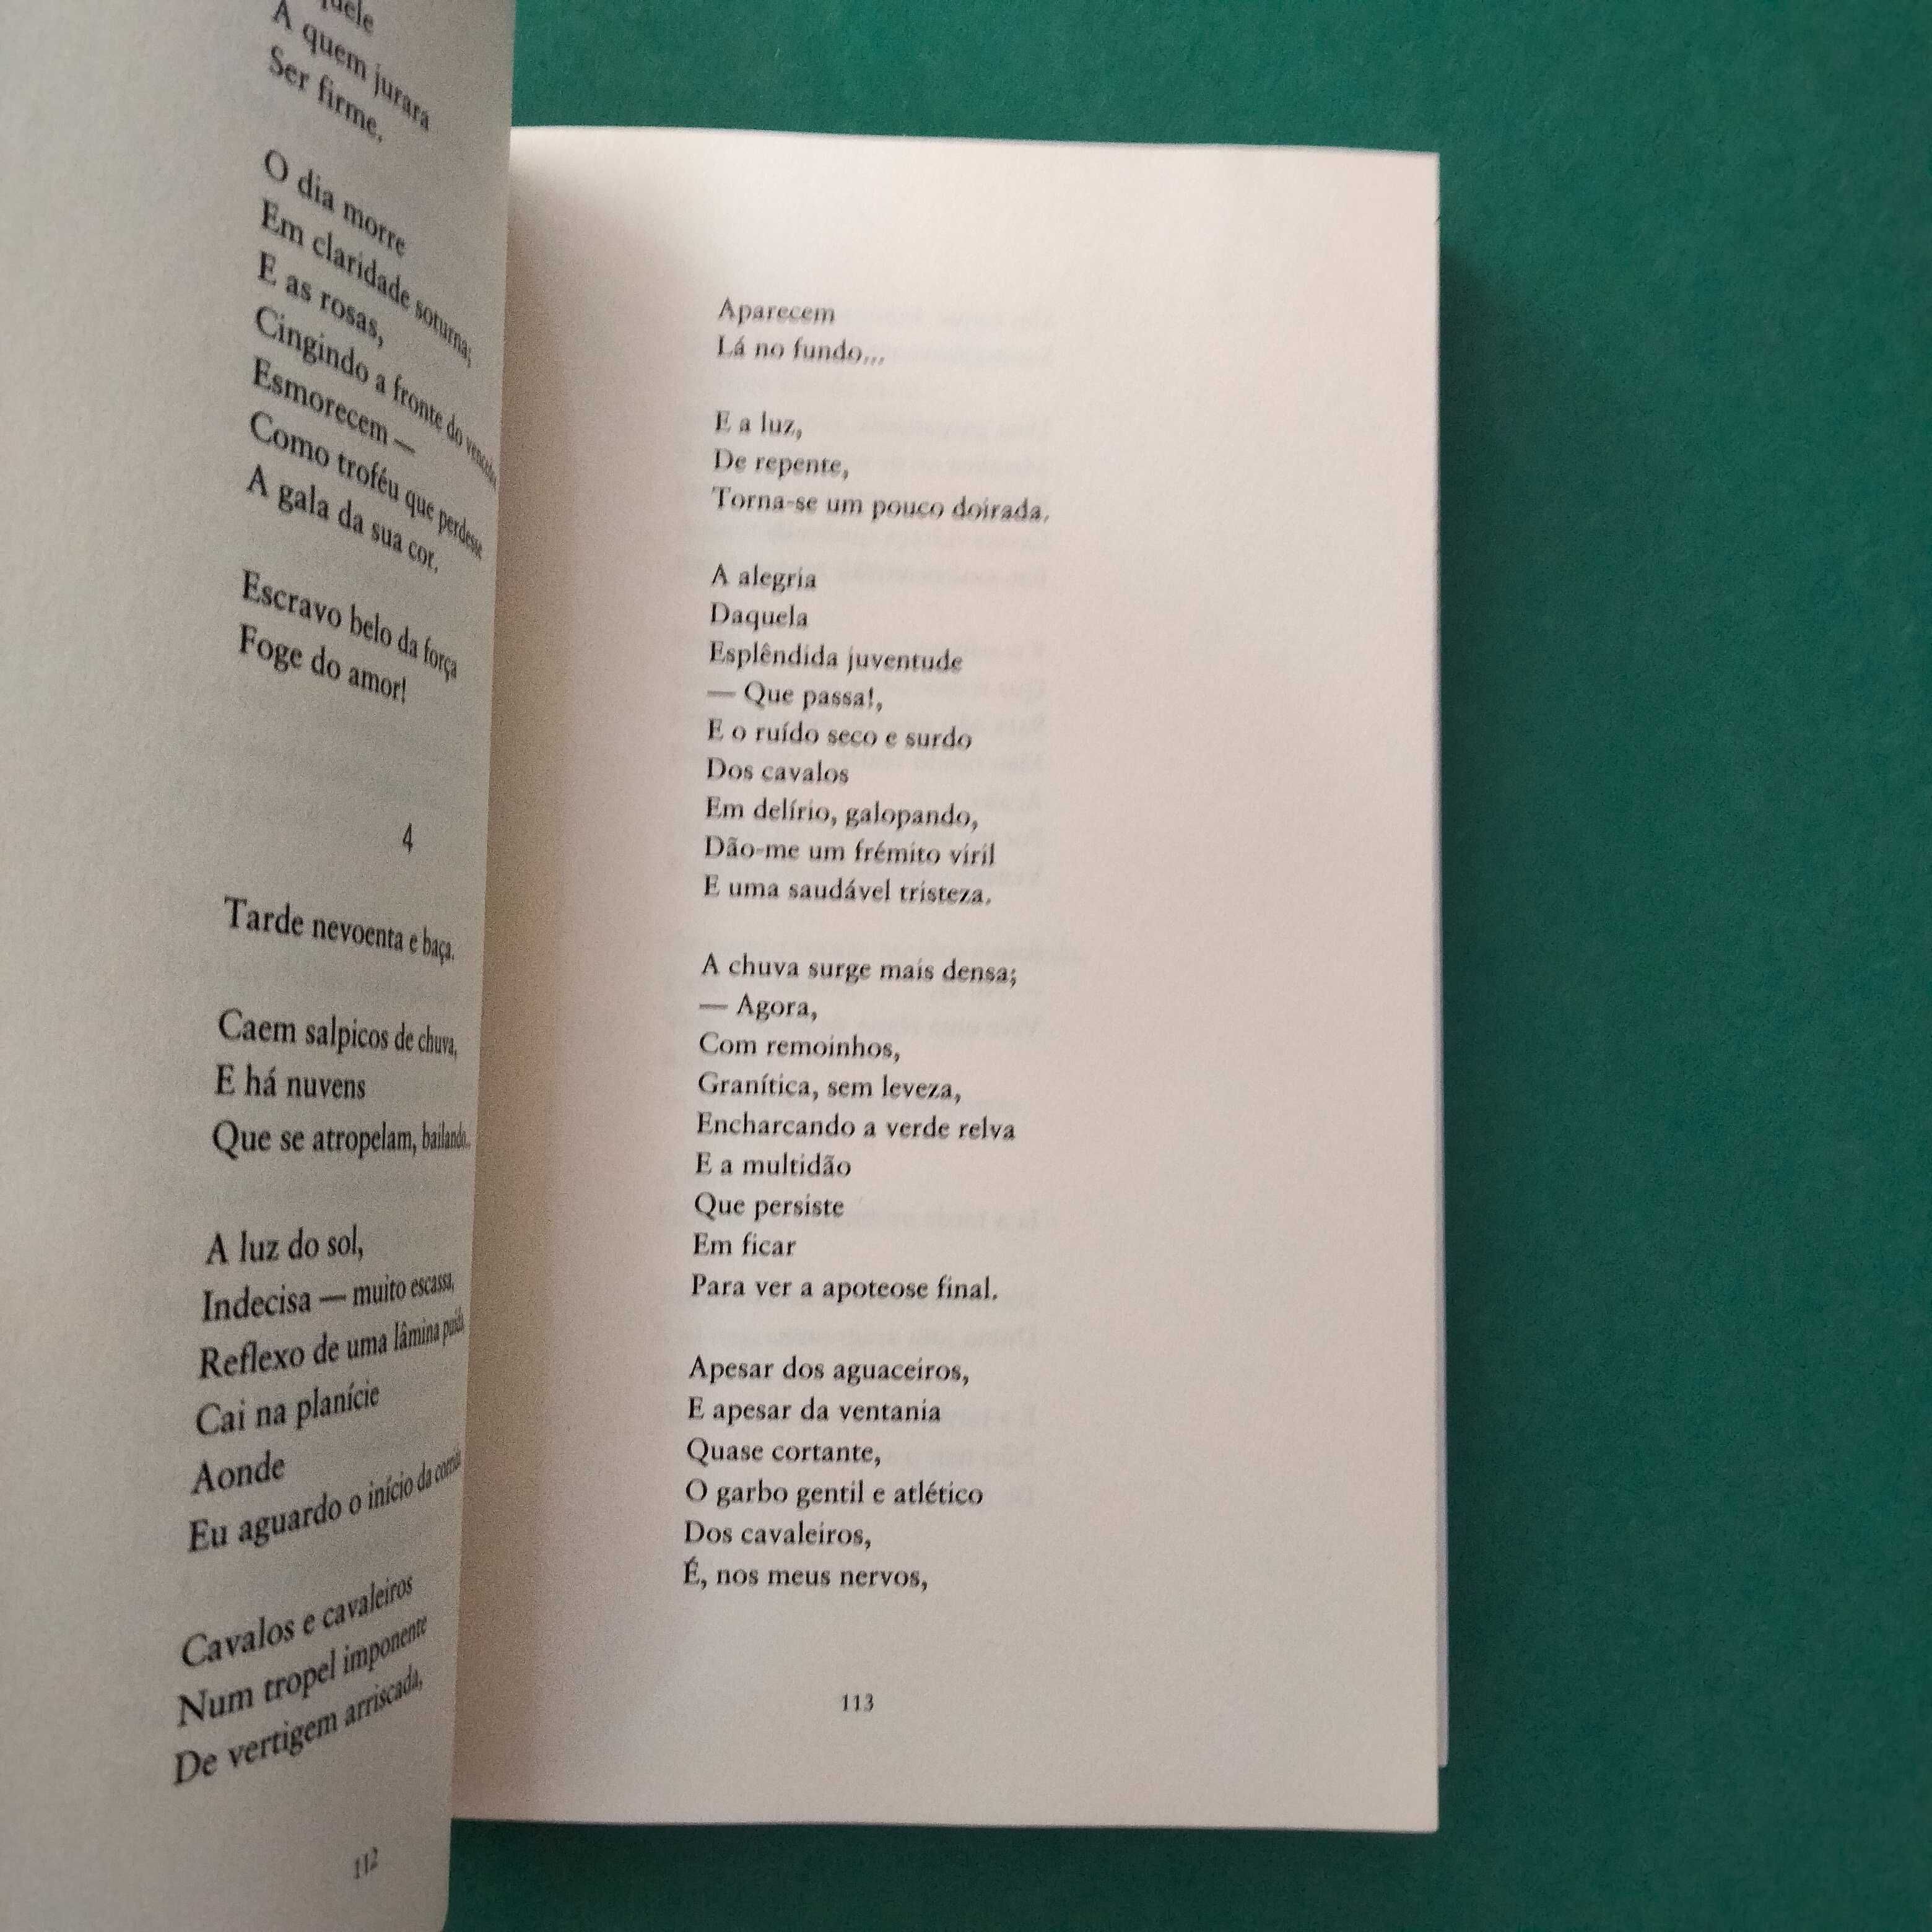 Canções e Outros Poemas - António Botto